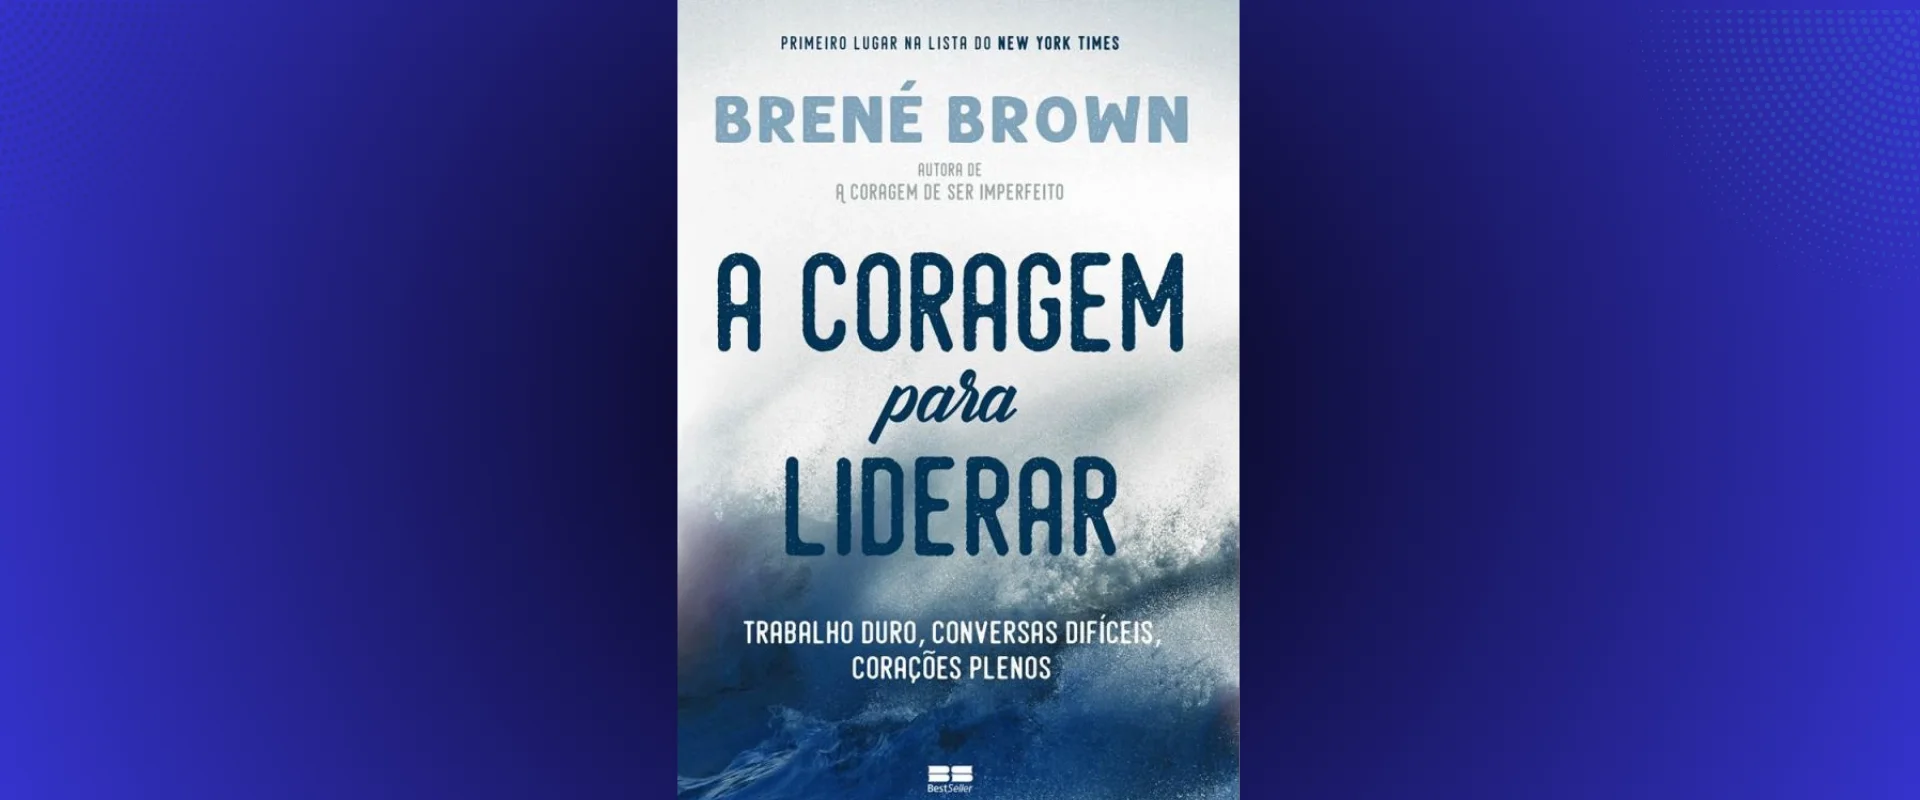 Indicação de Livro: CORAGEM para Liderar de Brené Brown